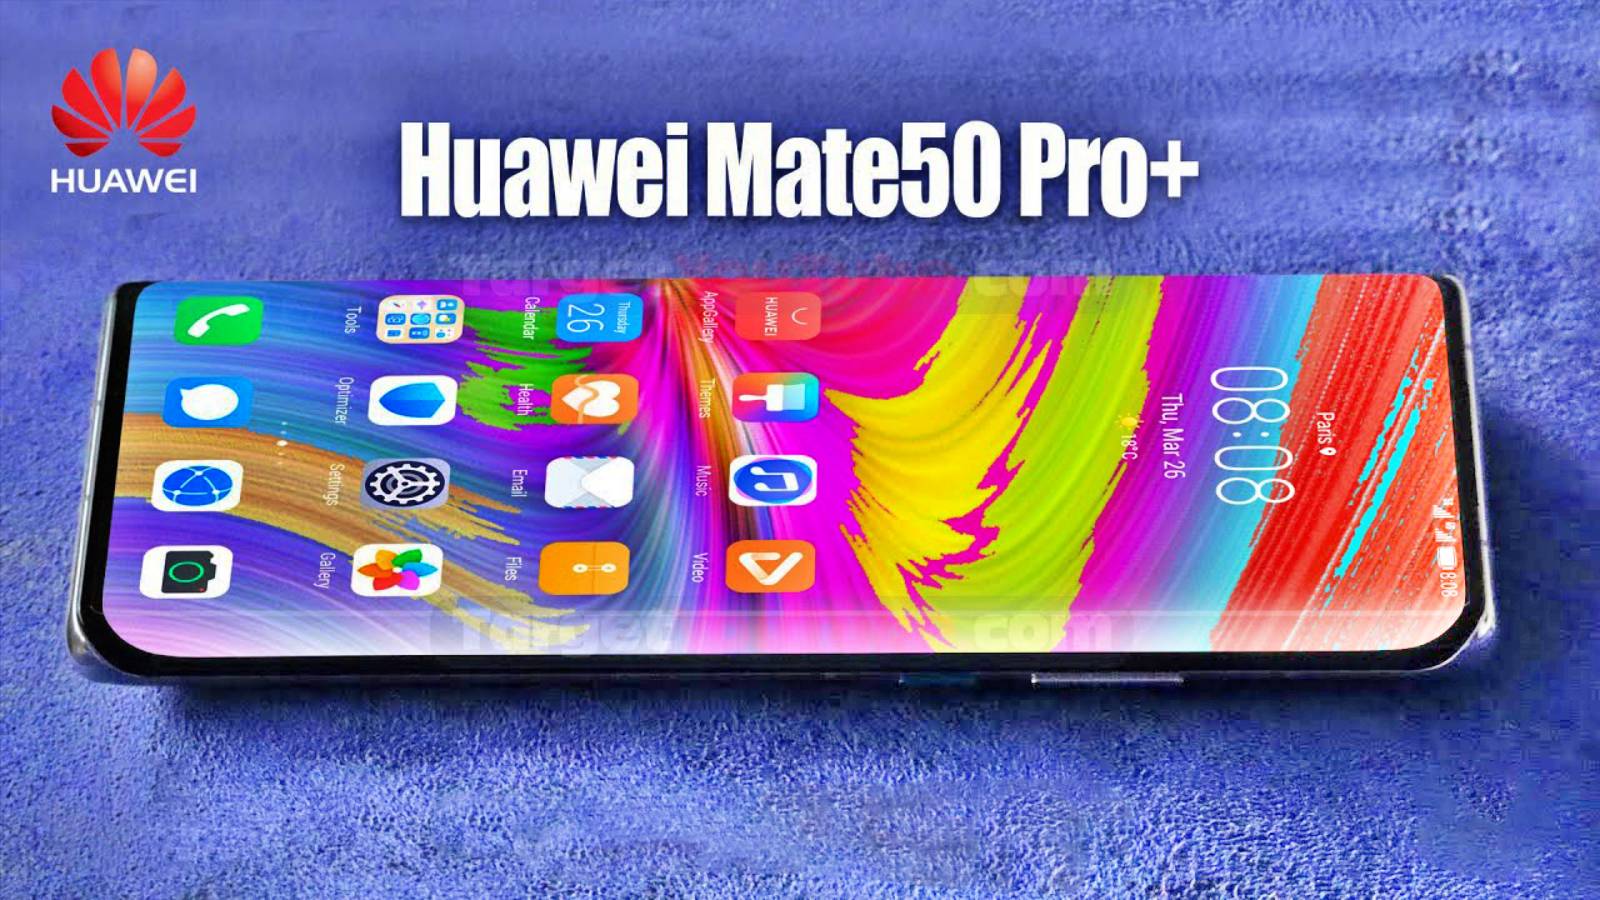 Huawei MATE 50 Pro lansat conform vicepresedinte Huawei